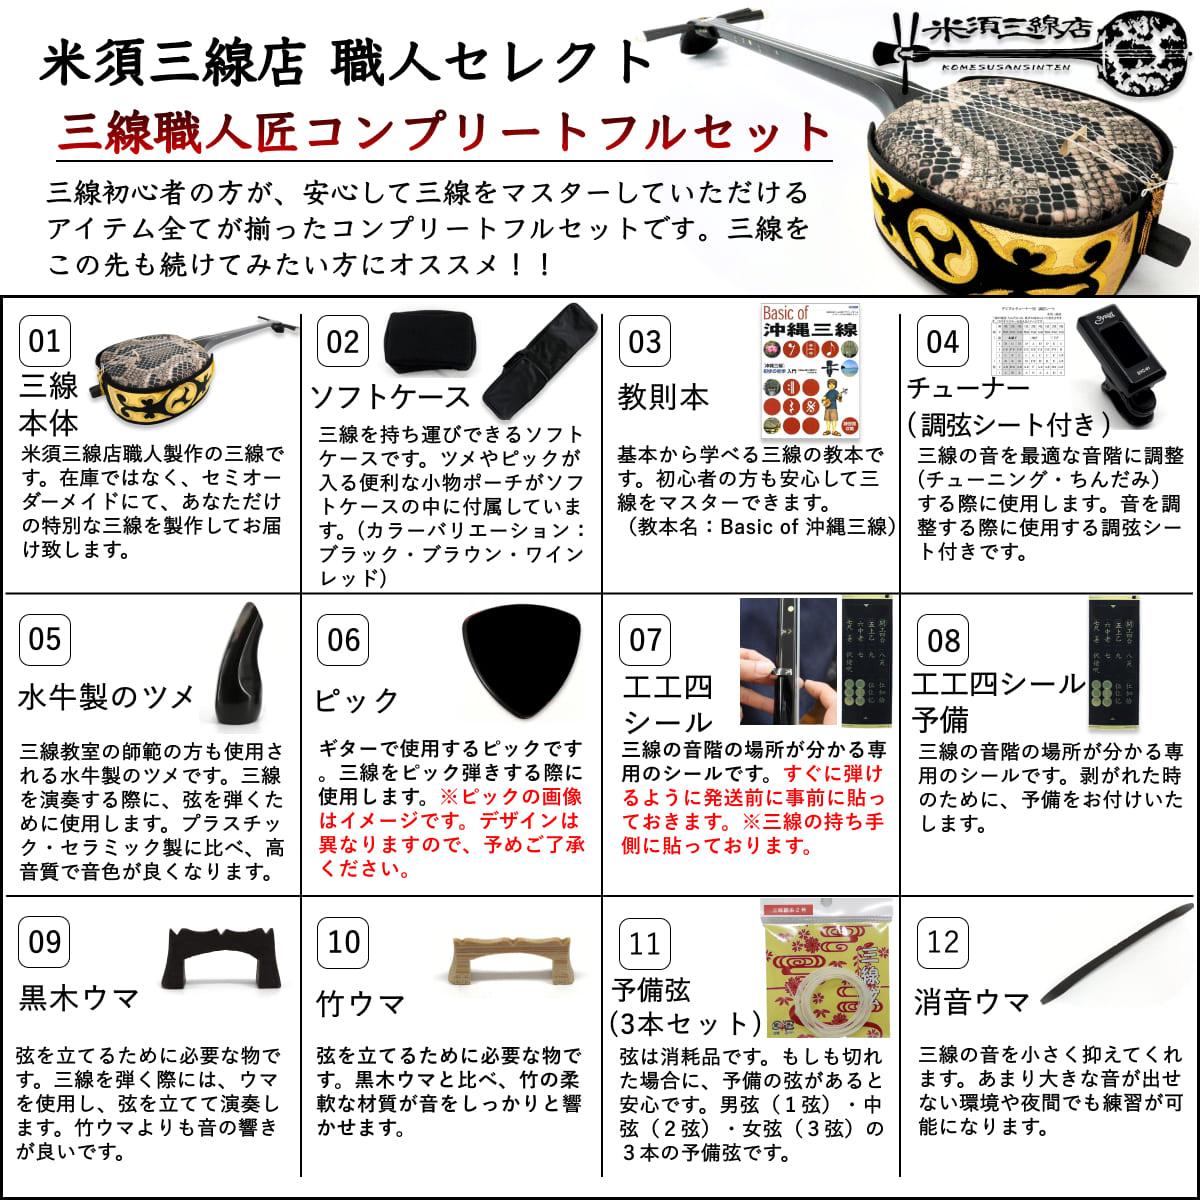 沖縄 三線 フルセット ケース 爪など 付属品多数 - 楽器・機材